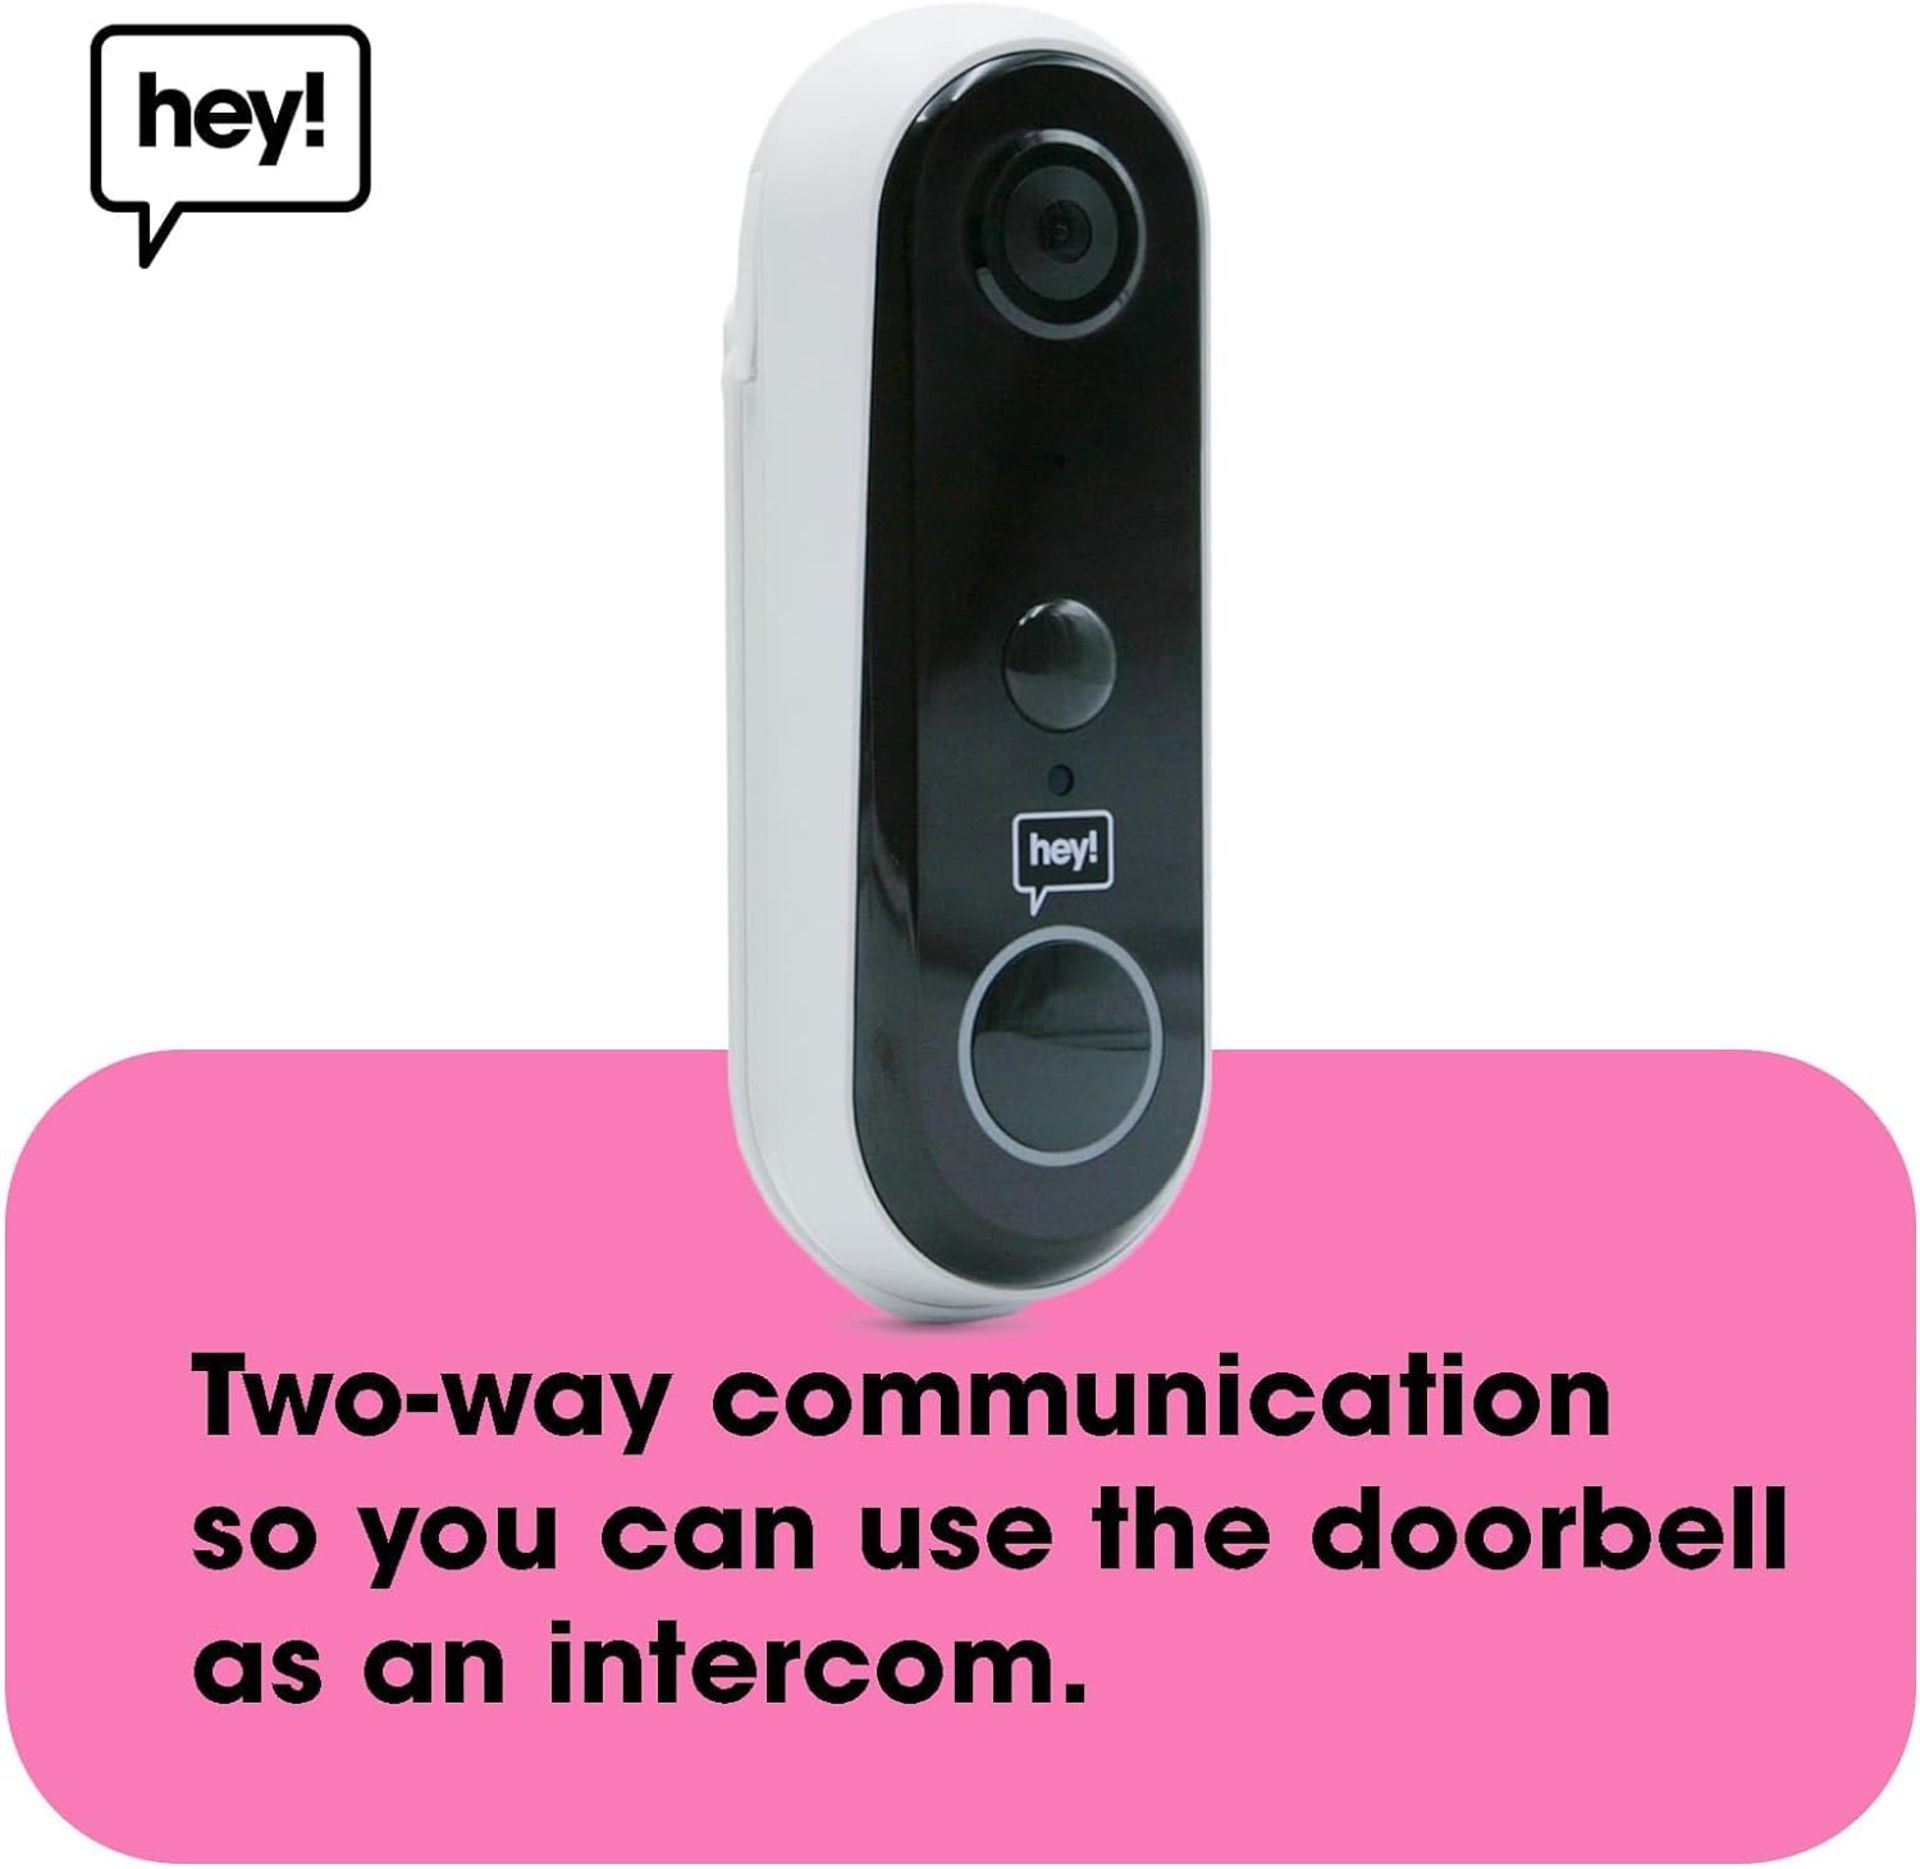 TRADE LOT 5 X NEW & BOXED HEY! SMART Wireless Video Doorbell. RRP £79.99 EACH. Wifi Doorbell - Image 5 of 7